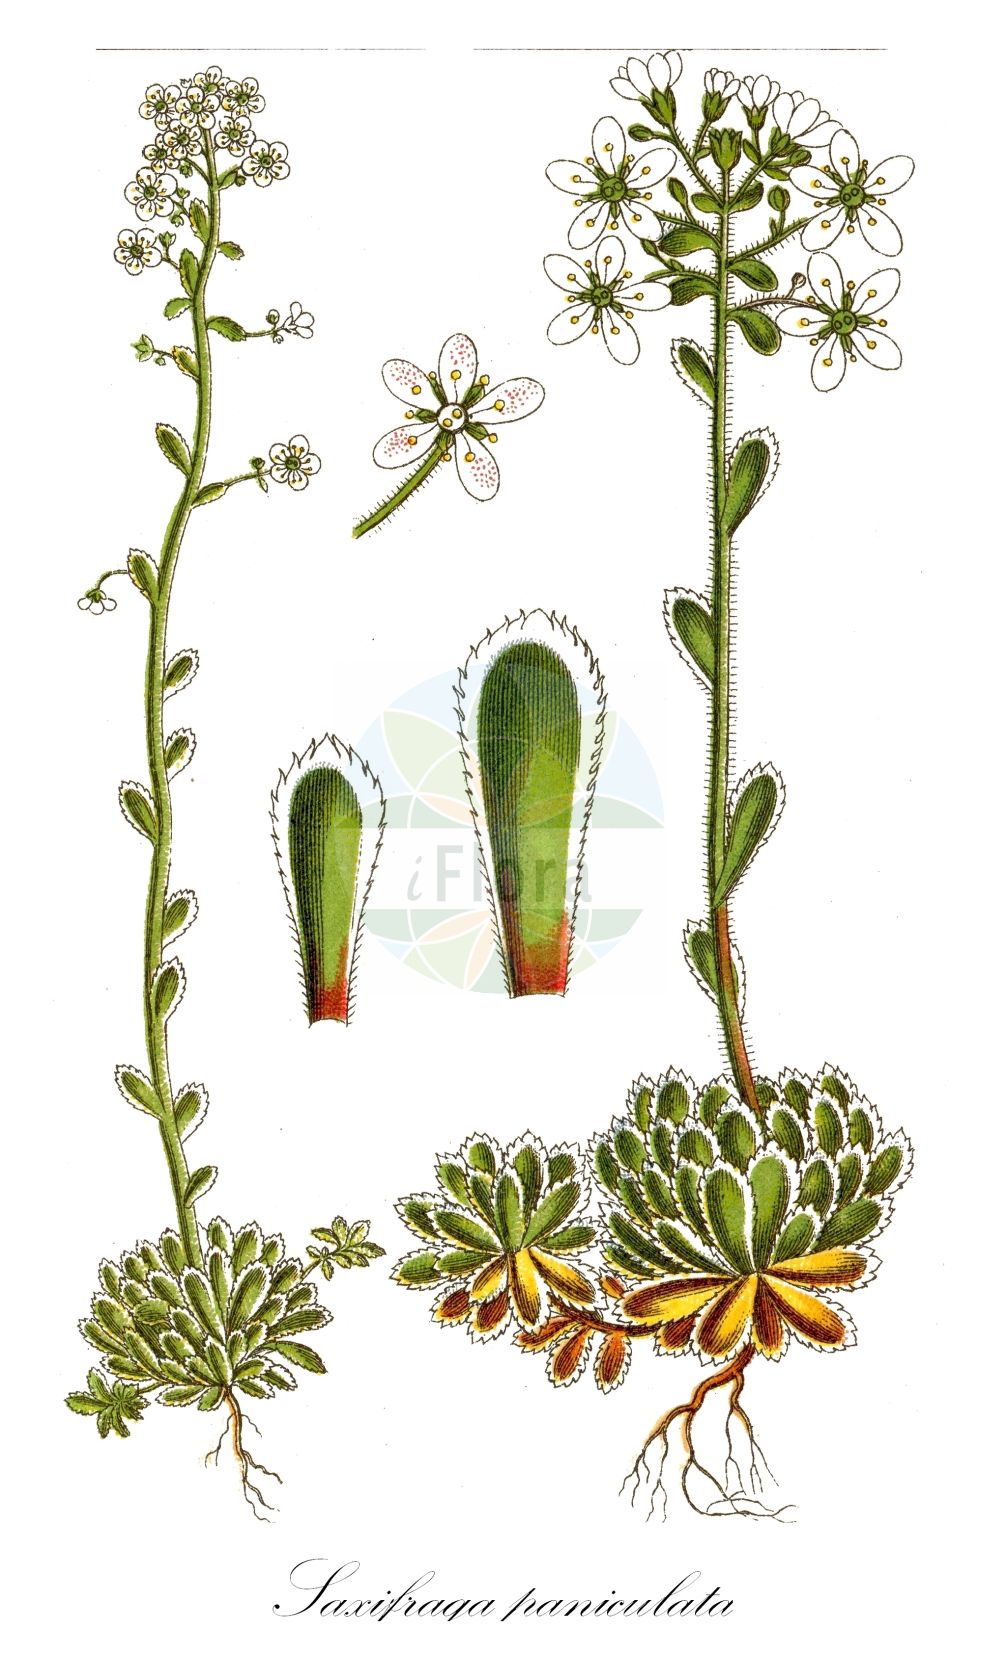 Historische Abbildung von Saxifraga paniculata (Rispen-Steinbrech - Livelong Saxifrage). Das Bild zeigt Blatt, Bluete, Frucht und Same. ---- Historical Drawing of Saxifraga paniculata (Rispen-Steinbrech - Livelong Saxifrage). The image is showing leaf, flower, fruit and seed.(Saxifraga paniculata,Rispen-Steinbrech,Livelong Saxifrage,Saxifraga aizoon,Saxifraga cartilaginea,Saxifraga paniculata,Saxifraga paniculata Mill. subsp.,Saxifraga paniculata subsp. stabiana,Rispen-Steinbrech,Livelong Saxifrage,White Mountain Saxifrage,Saxifraga,Steinbrech,Saxifrage,Saxifragaceae,Steinbrechgewächse,Saxifrage family,Blatt,Bluete,Frucht,Same,leaf,flower,fruit,seed,Sturm (1796f))